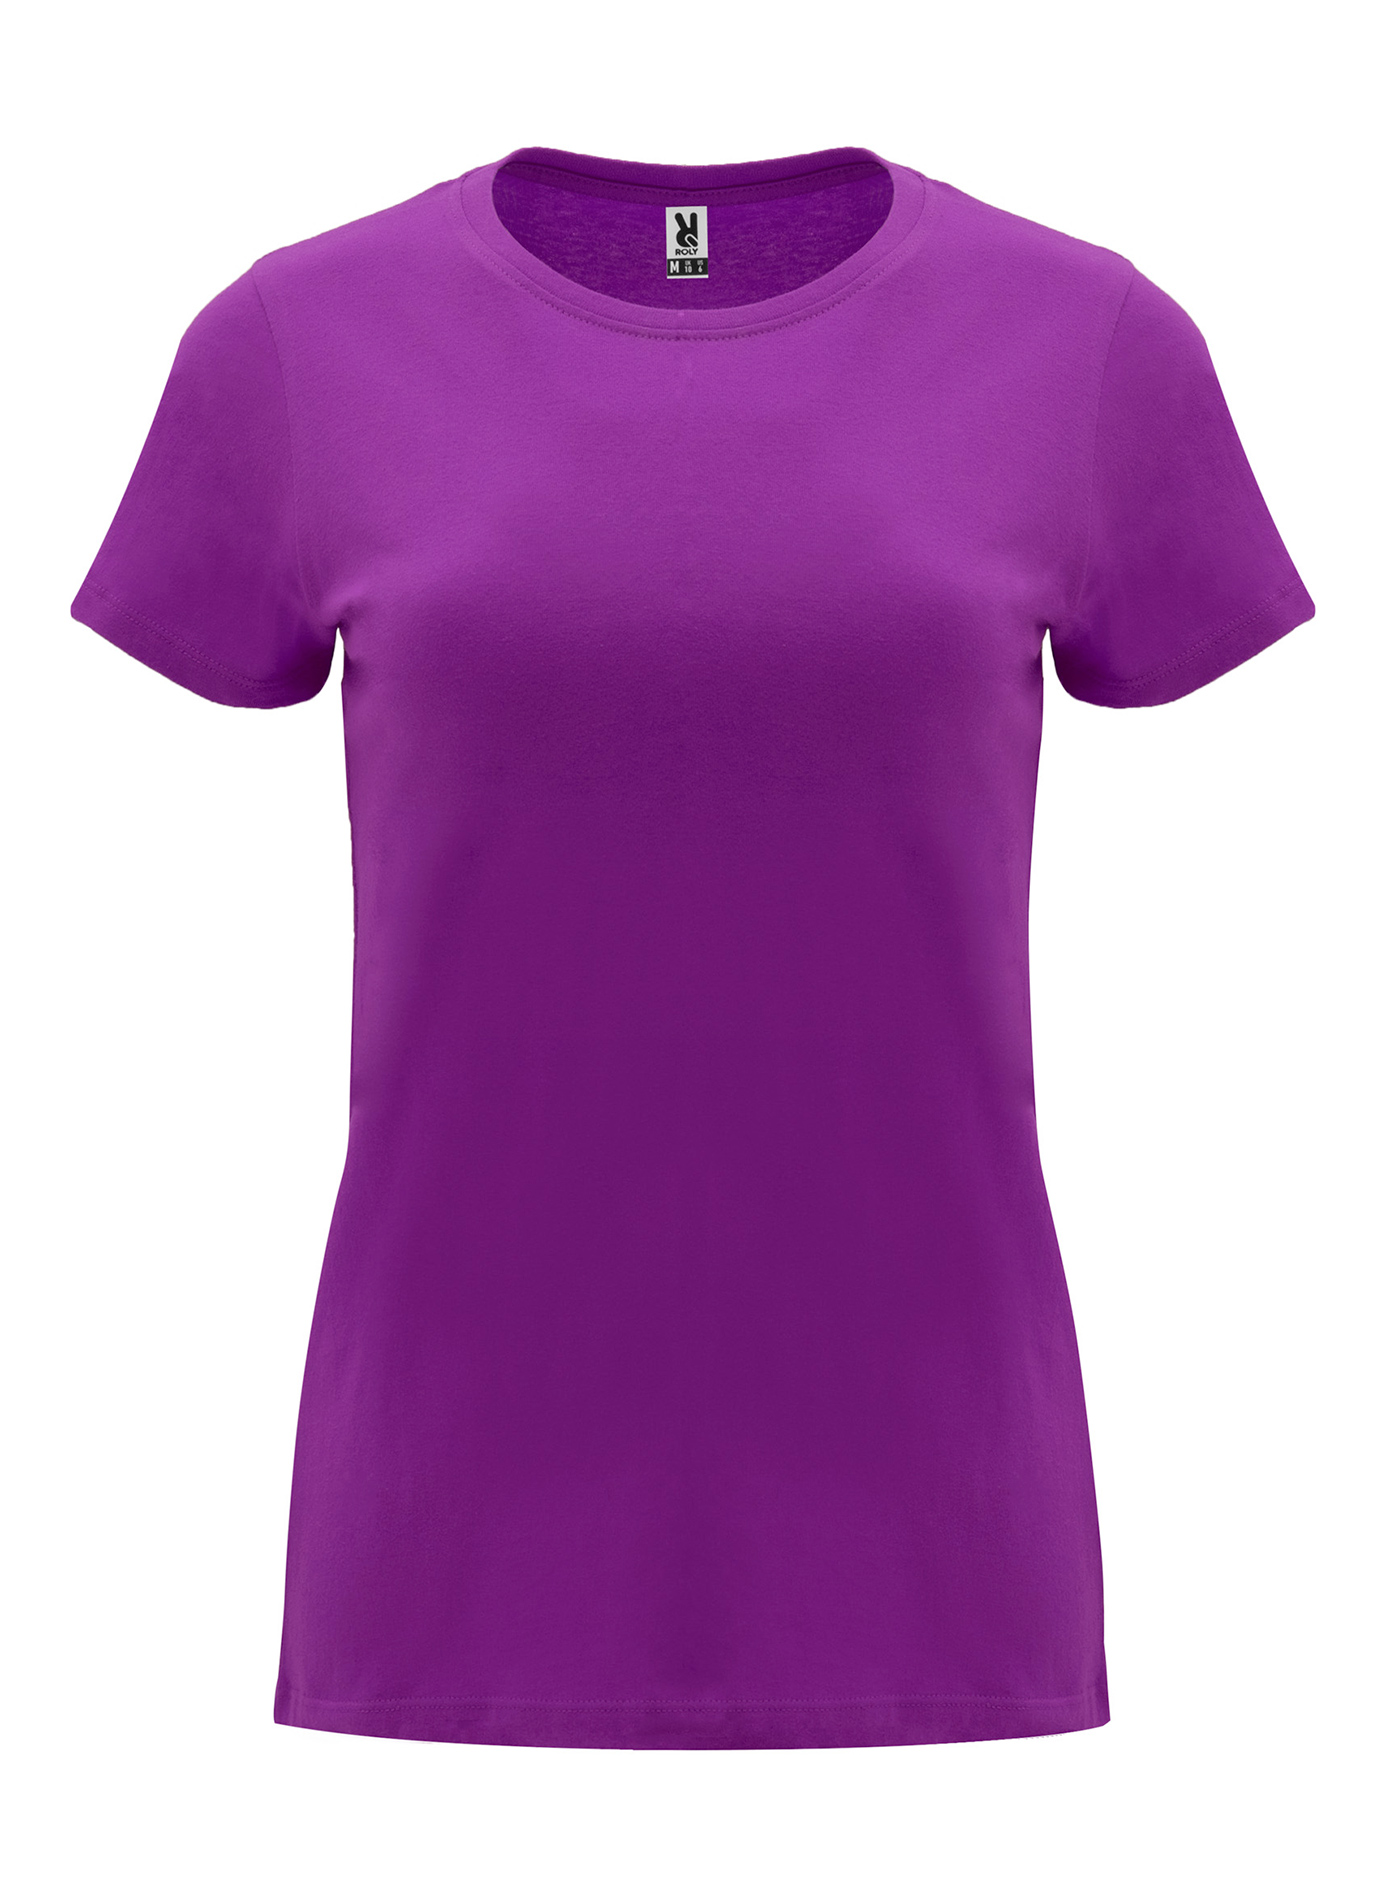 Dámské tričko Roly Capri - fialová M